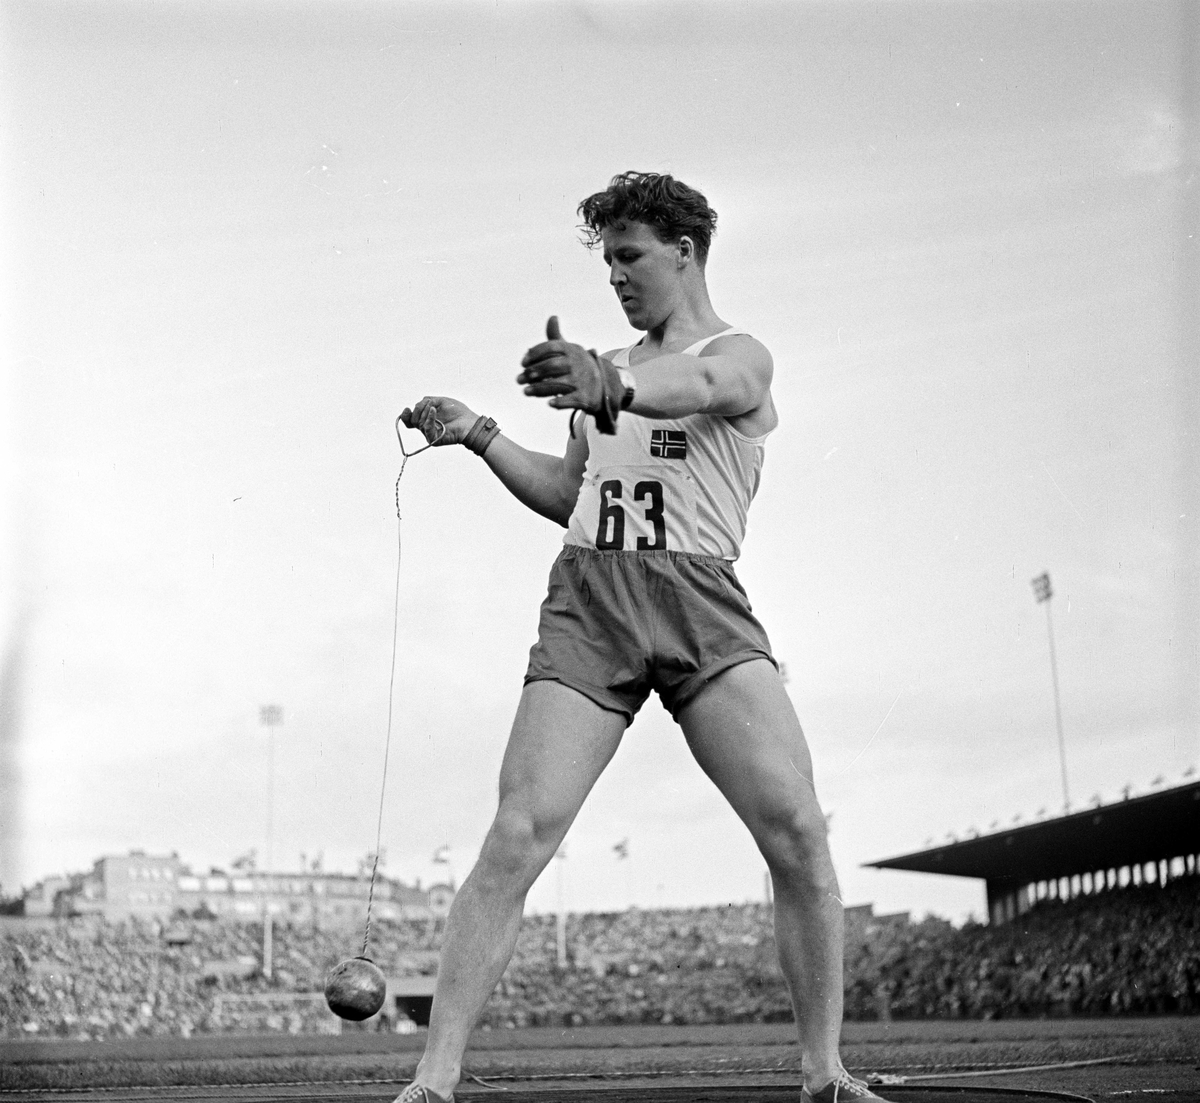 Serie. Landskamp i friidrett mellom Ungarn og Norge på Bislett, Oslo. Fotografert 1954.